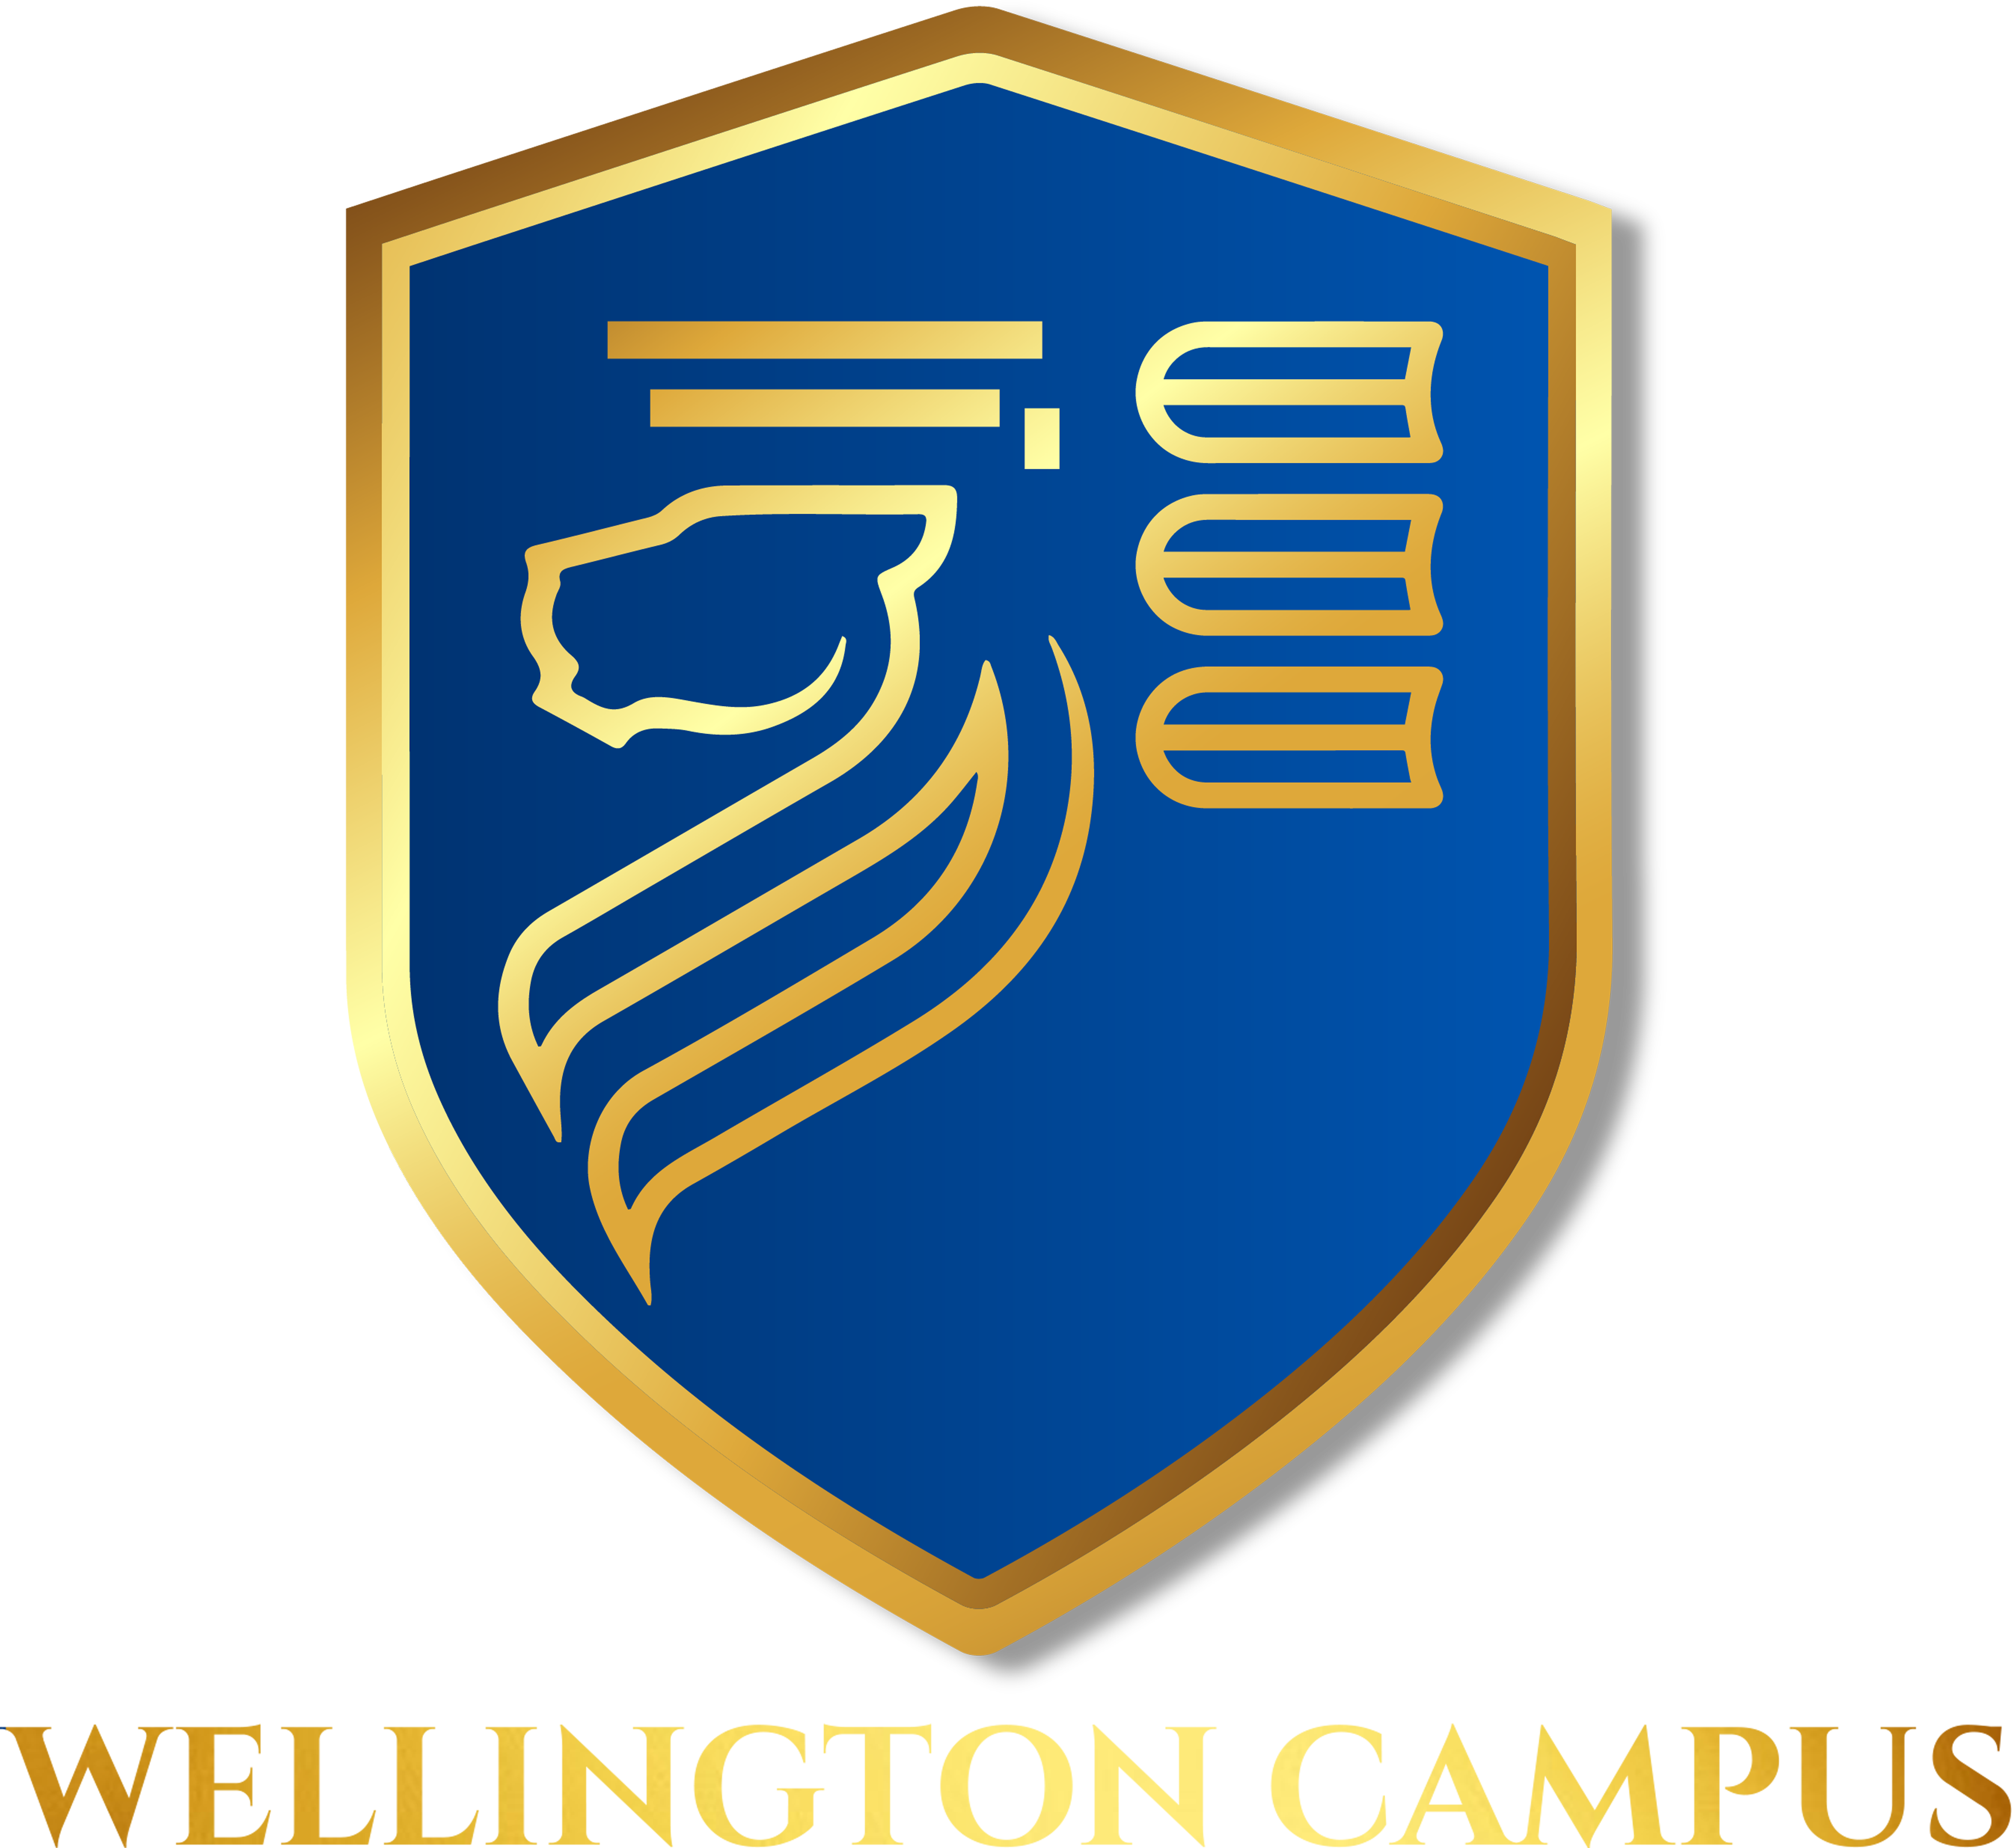 Wellington Campus